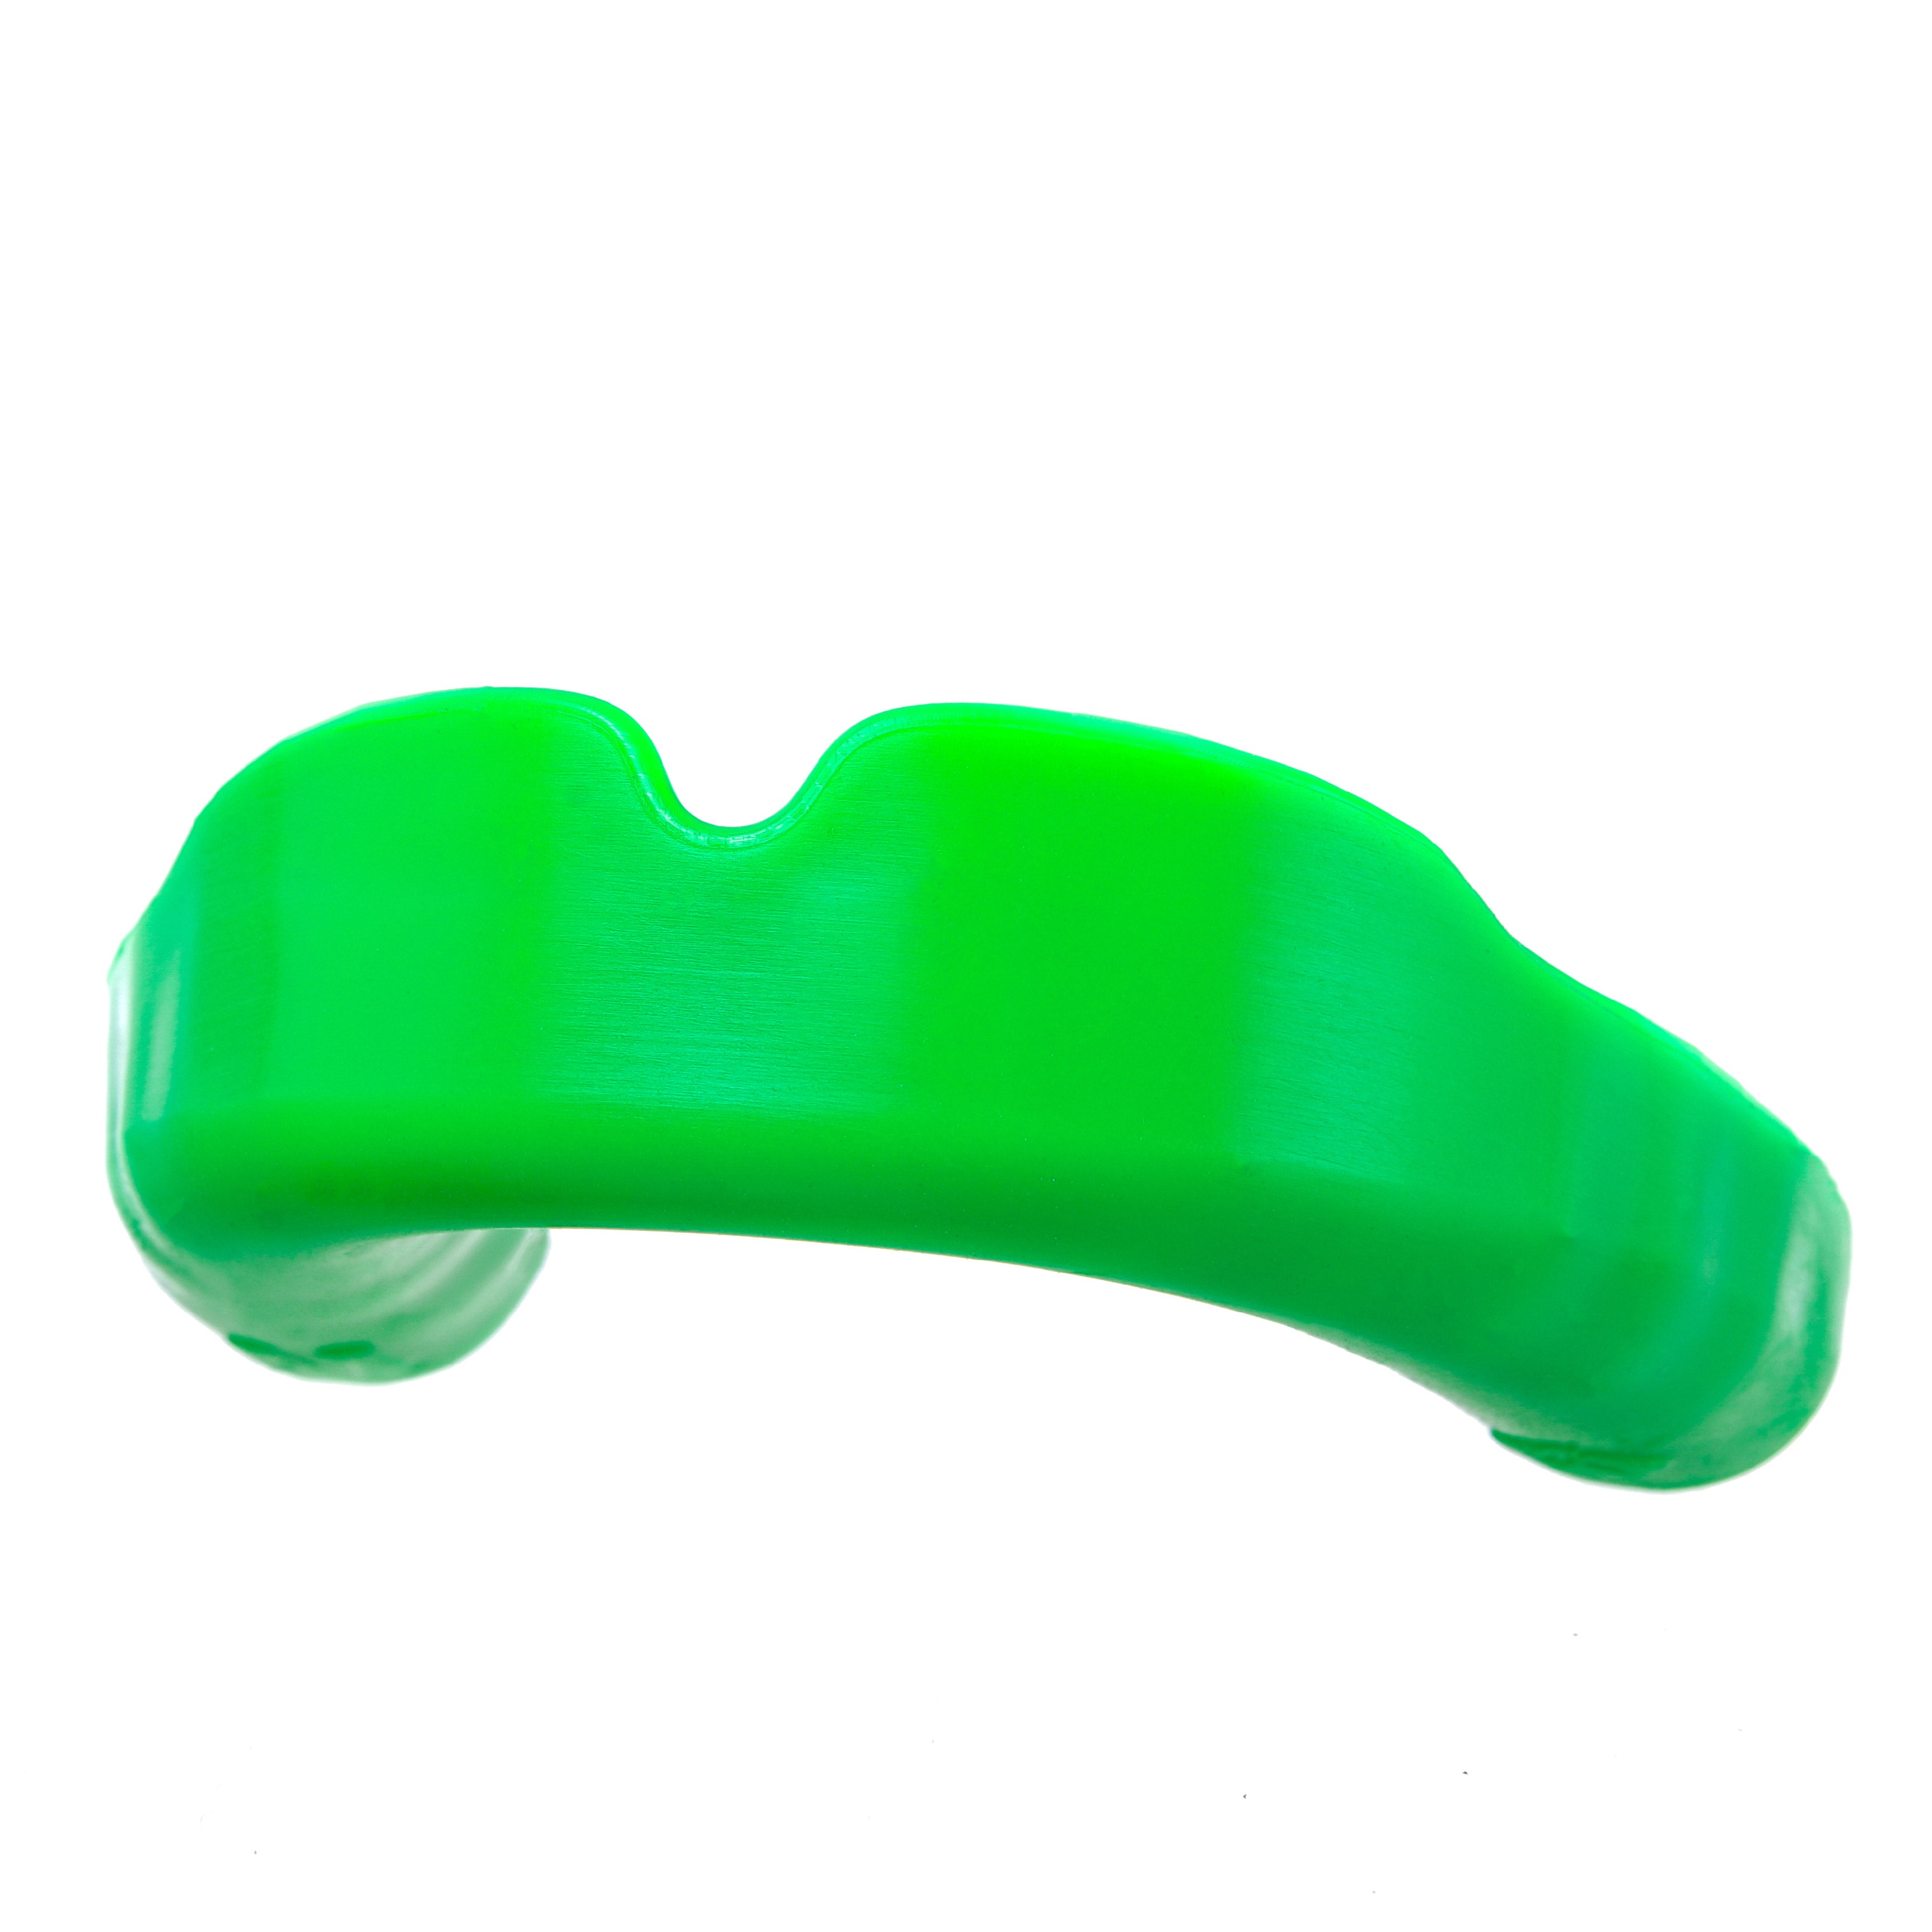 APEX LITE Green mouthguard